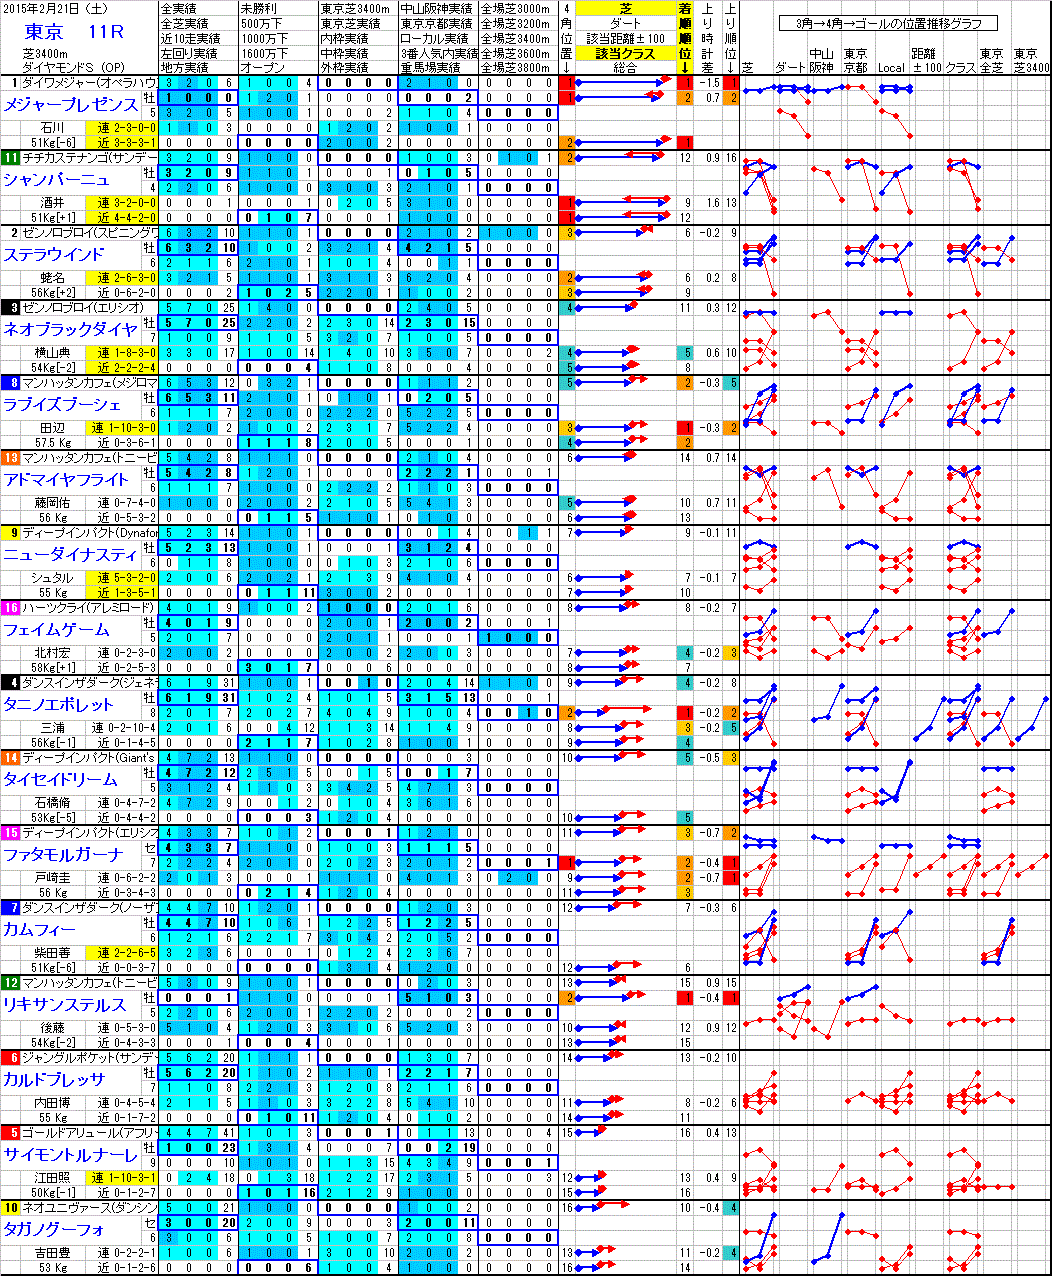 東京 2015年2月21日 （土） ： 11R － 分析データ